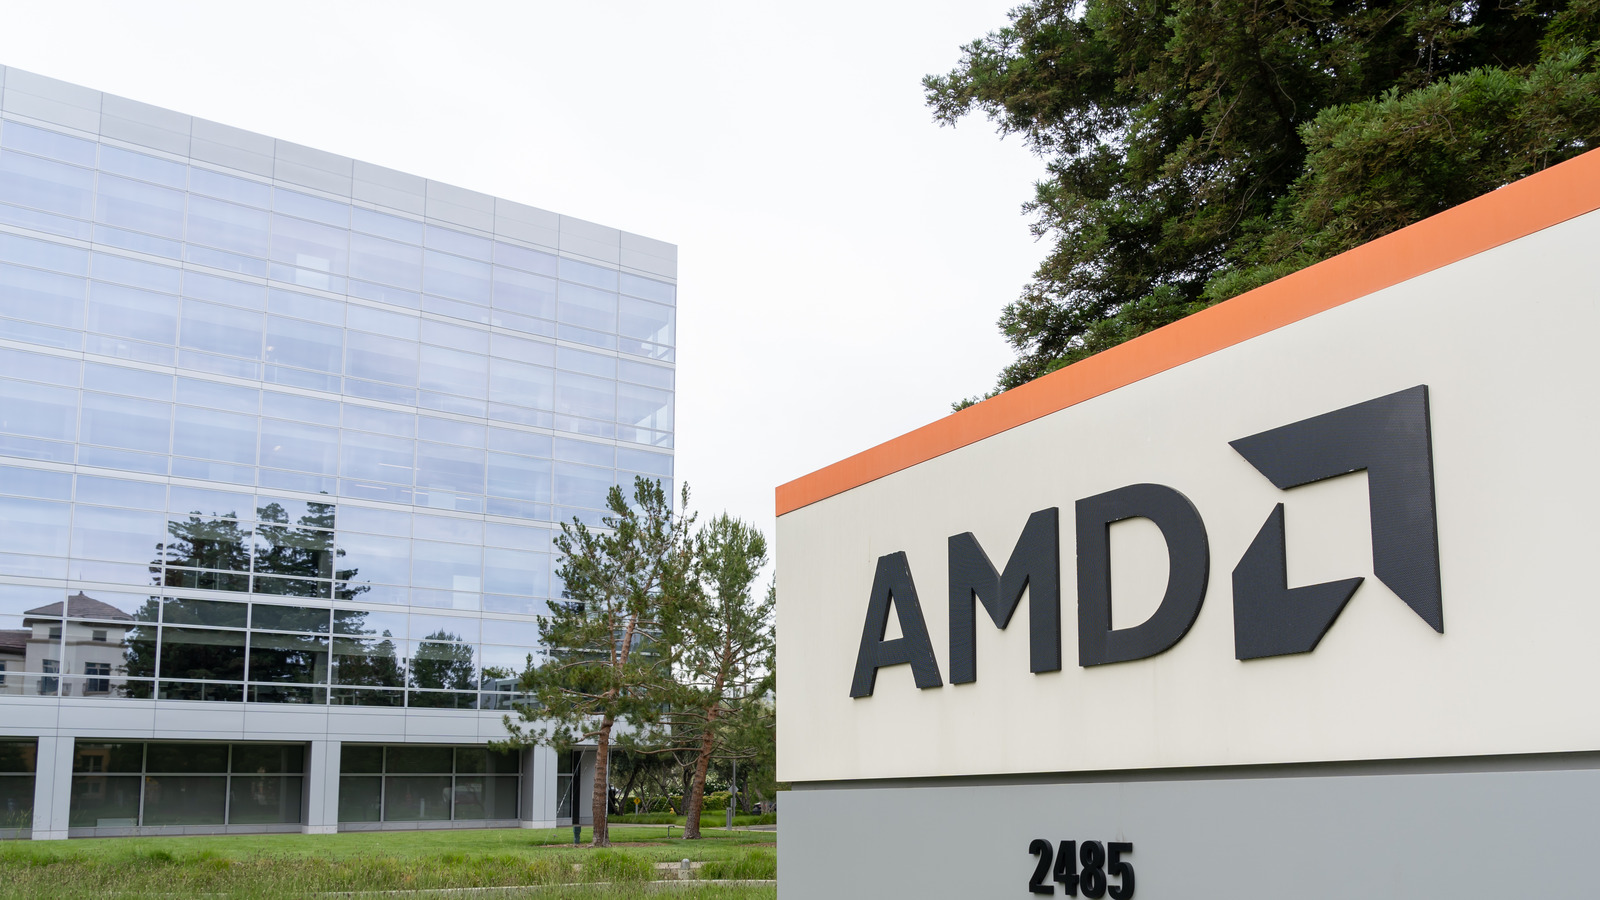 Aquí es donde se fabrican los procesadores y las tarjetas gráficas AMD